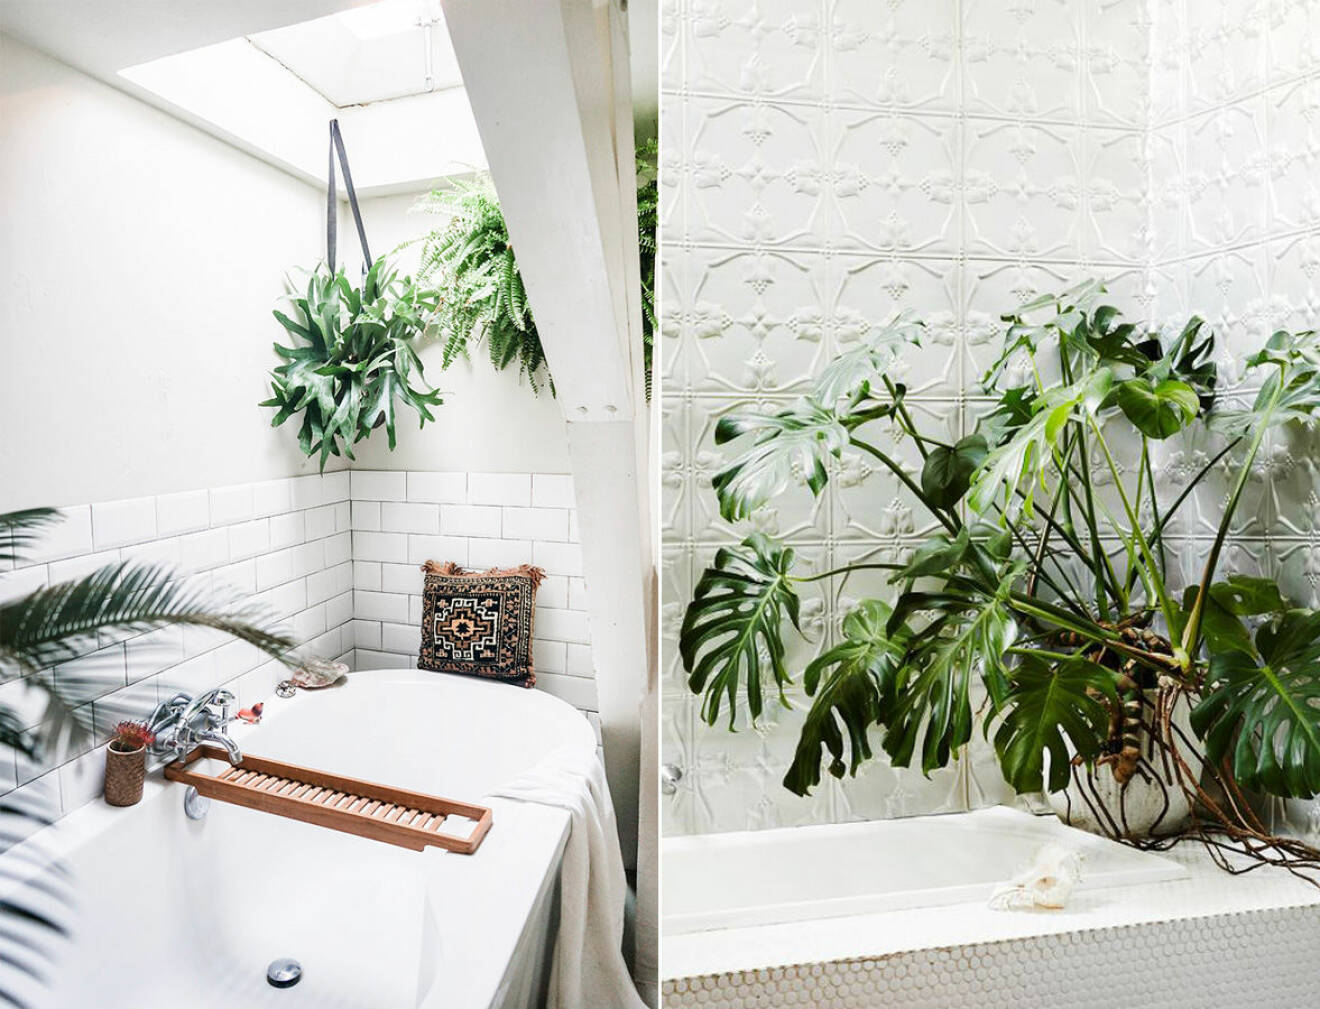 Inred badrummet med växter. 